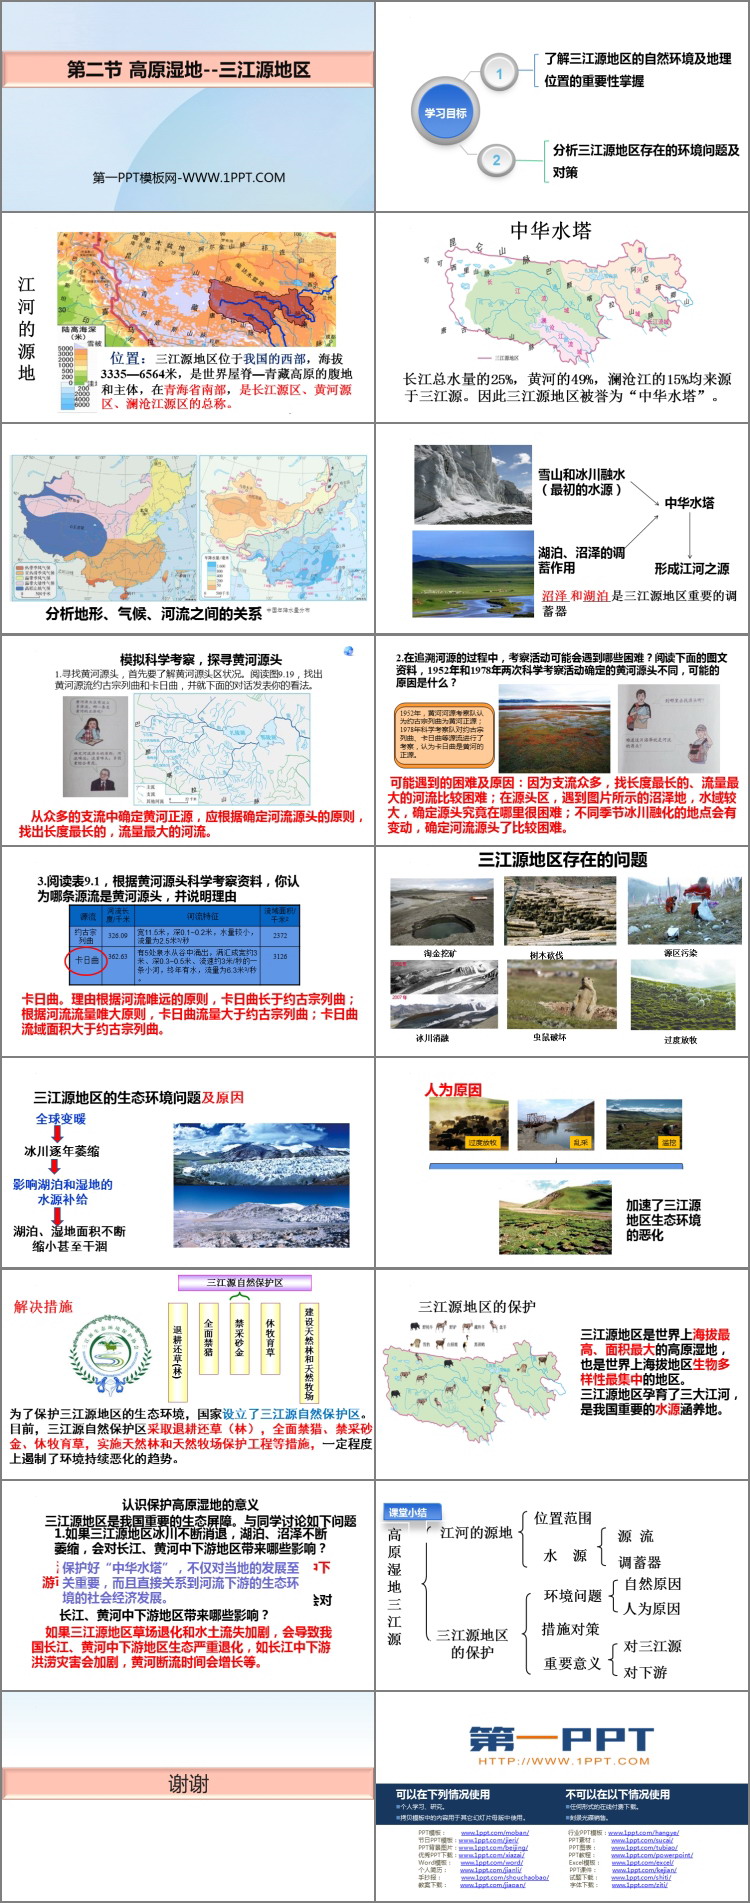 《高原湿地三江源地区》青藏地区PPT下载-预览图02